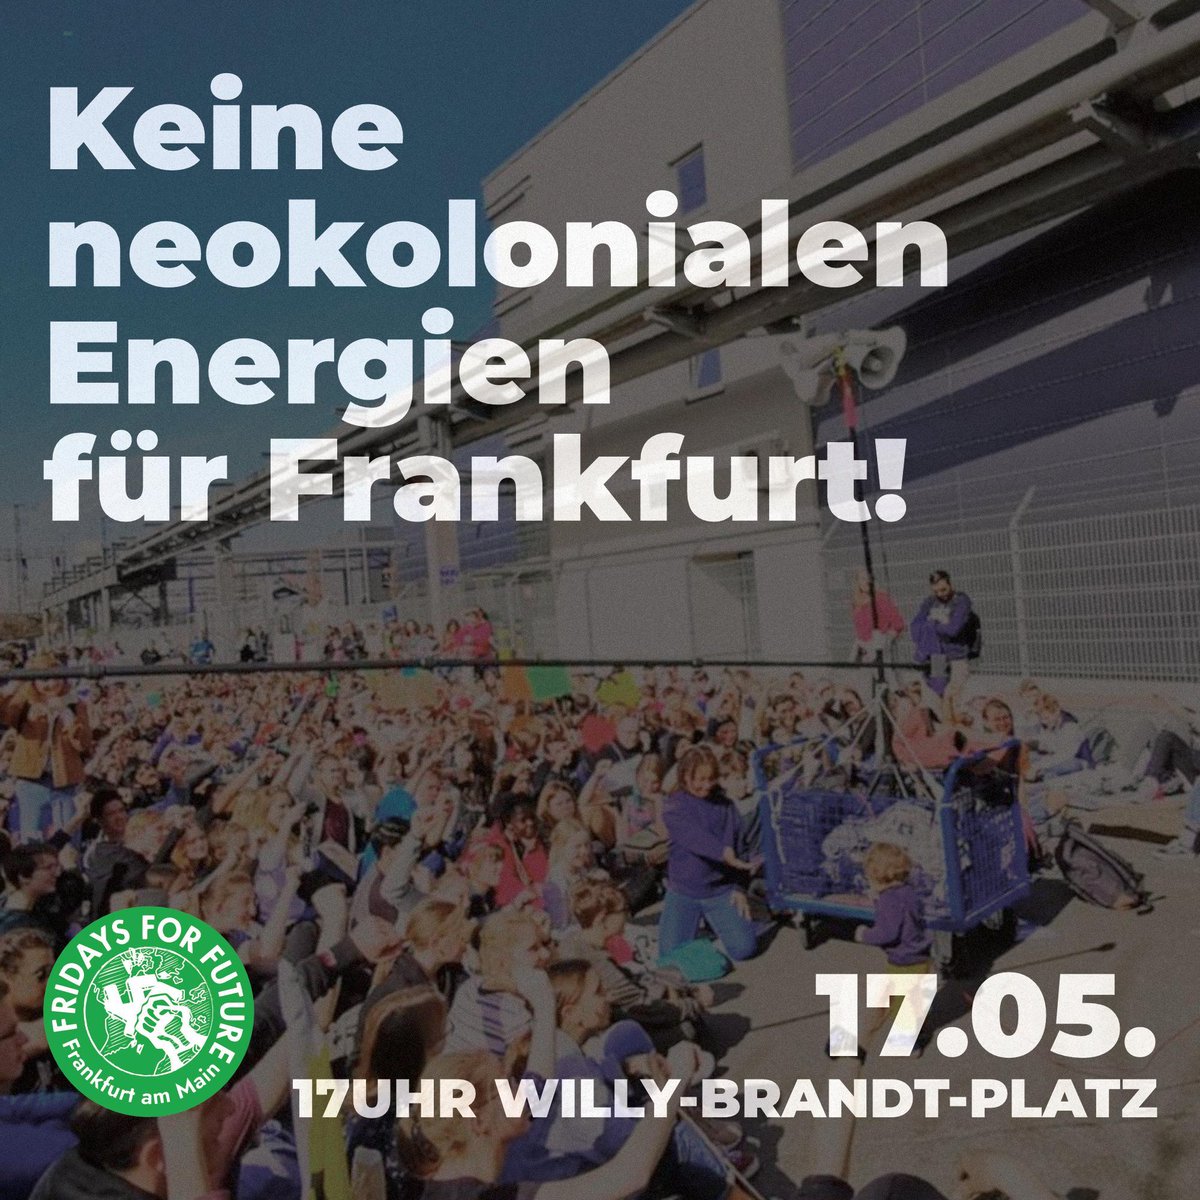 Am 17.05. gegen Neokoloniale Energien für Frankfurt auf die Straße! 17Uhr Willy-Brandt-Platz #PeopleNotProfit